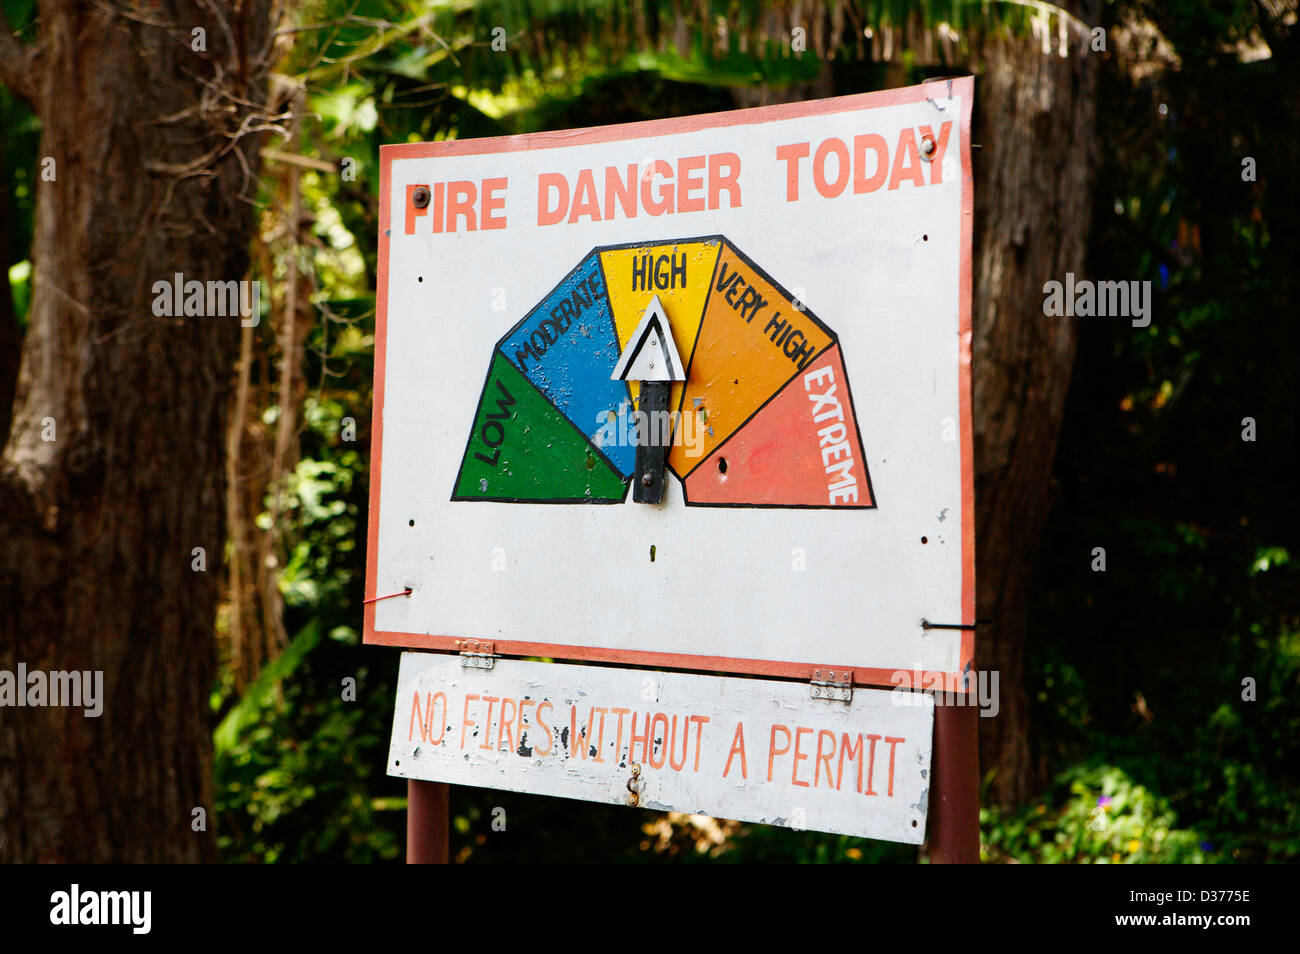 Fire Danger Chart